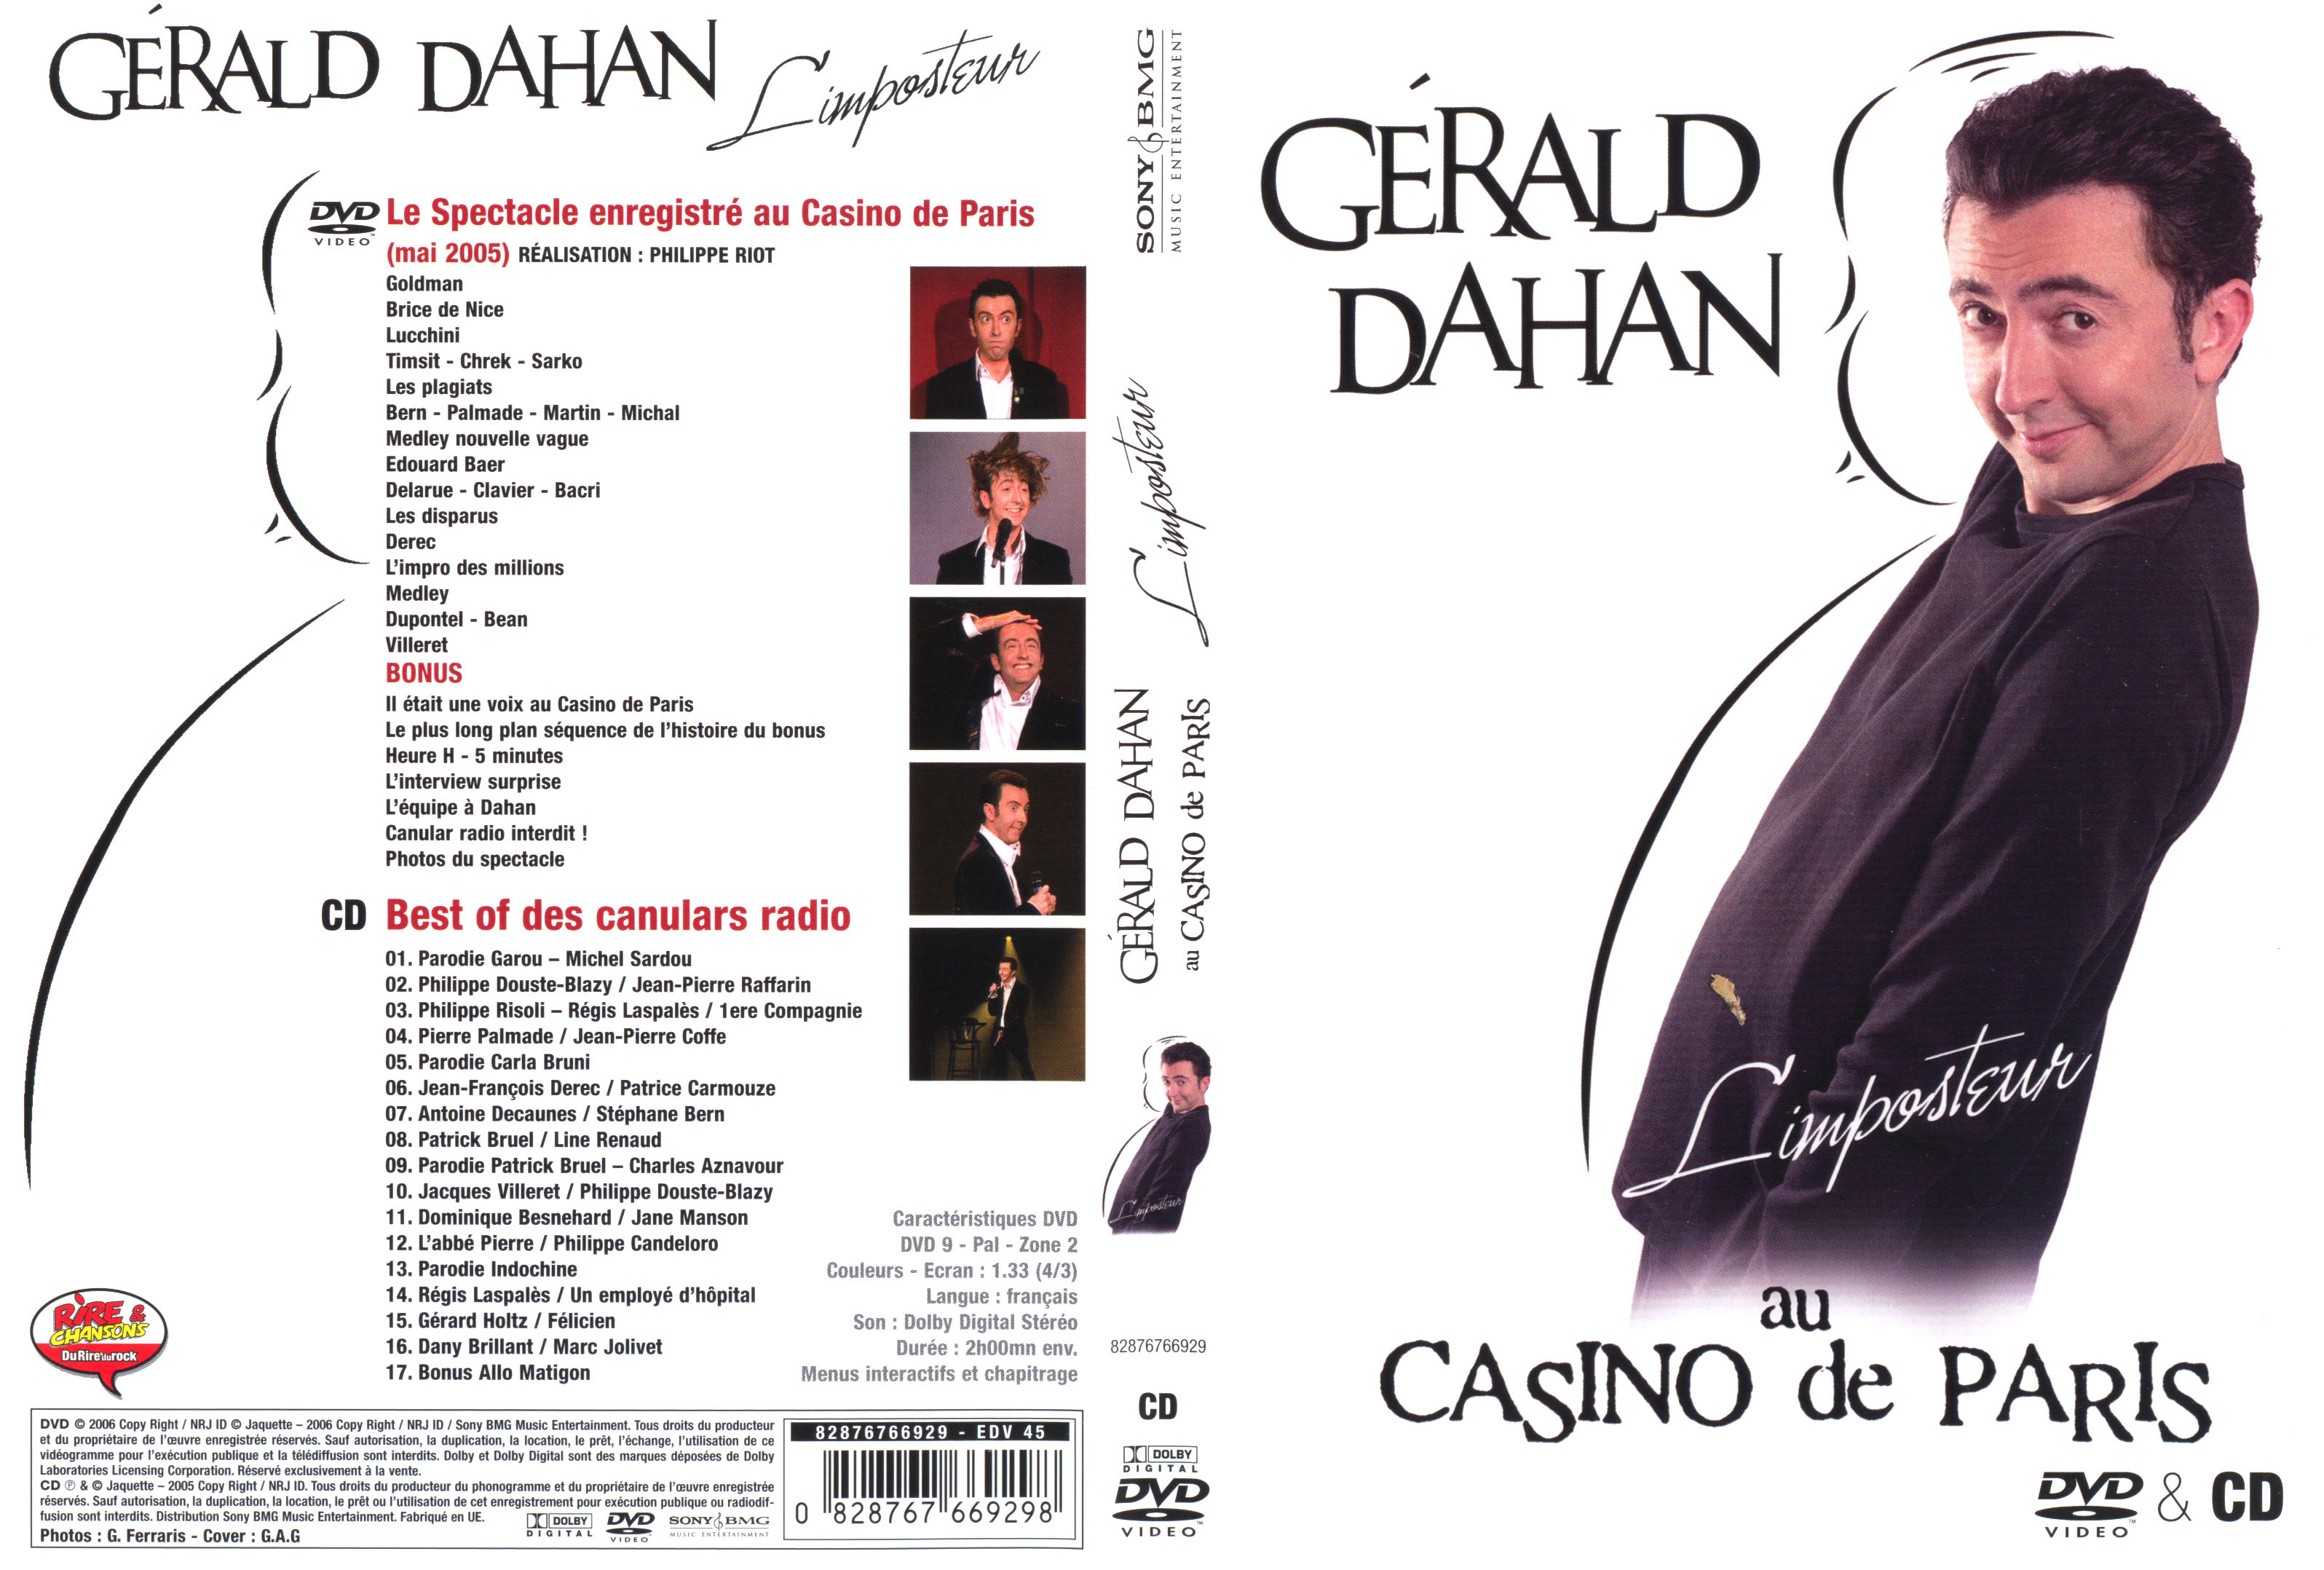 Jaquette DVD Grald Dahan au Casino de Paris